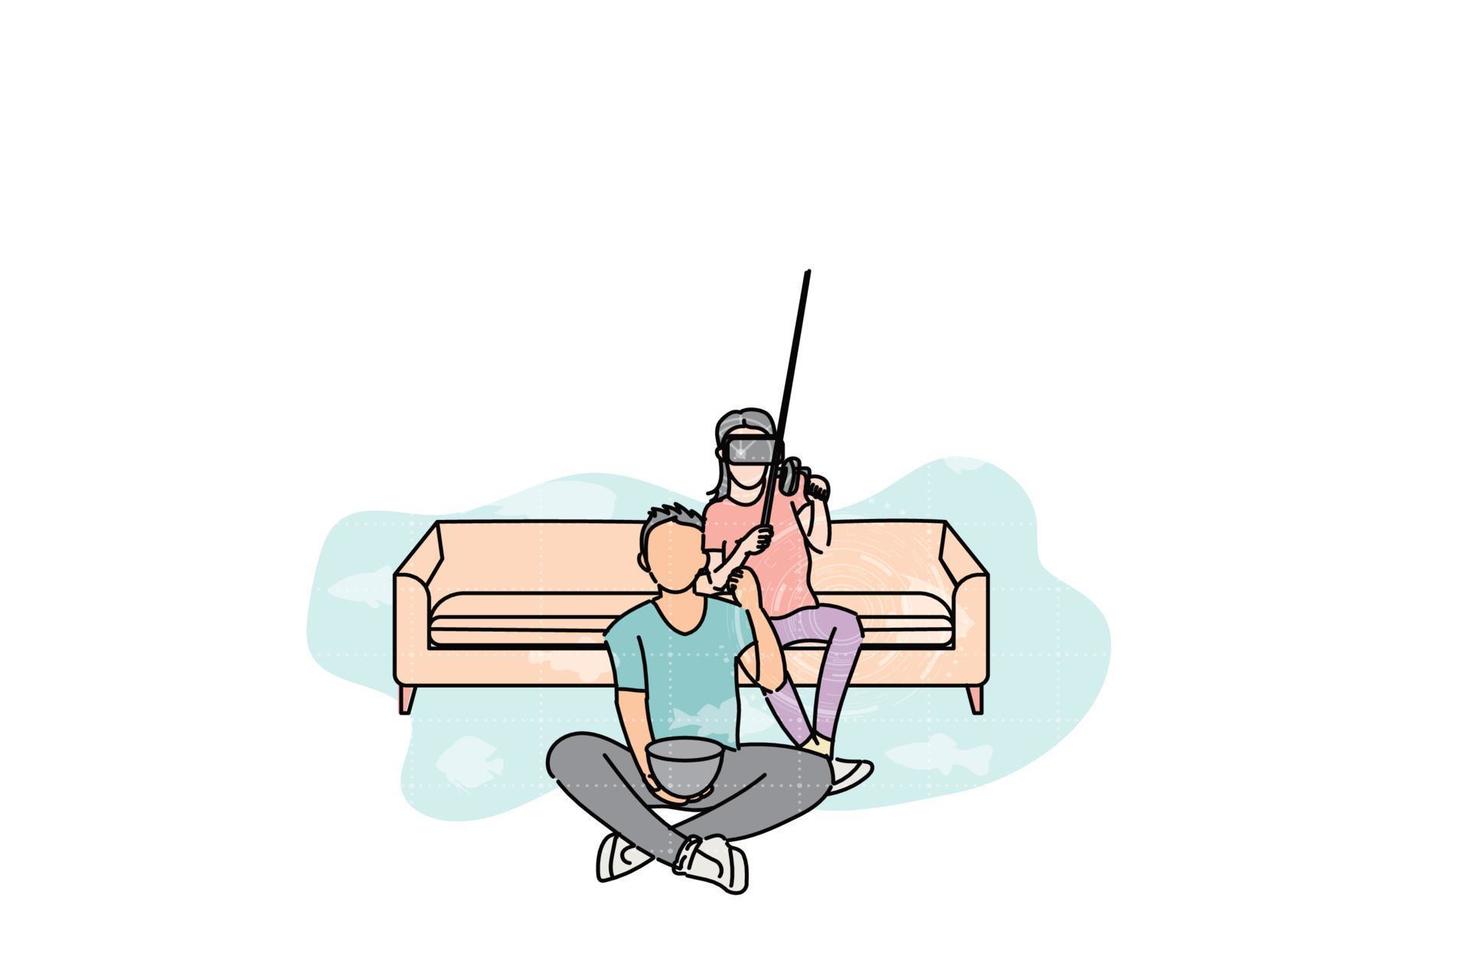 giovani e coppie felici che giocano insieme il gioco del vr. giocando a un gioco di pesca virtuale. disegno di illustrazione vettoriale